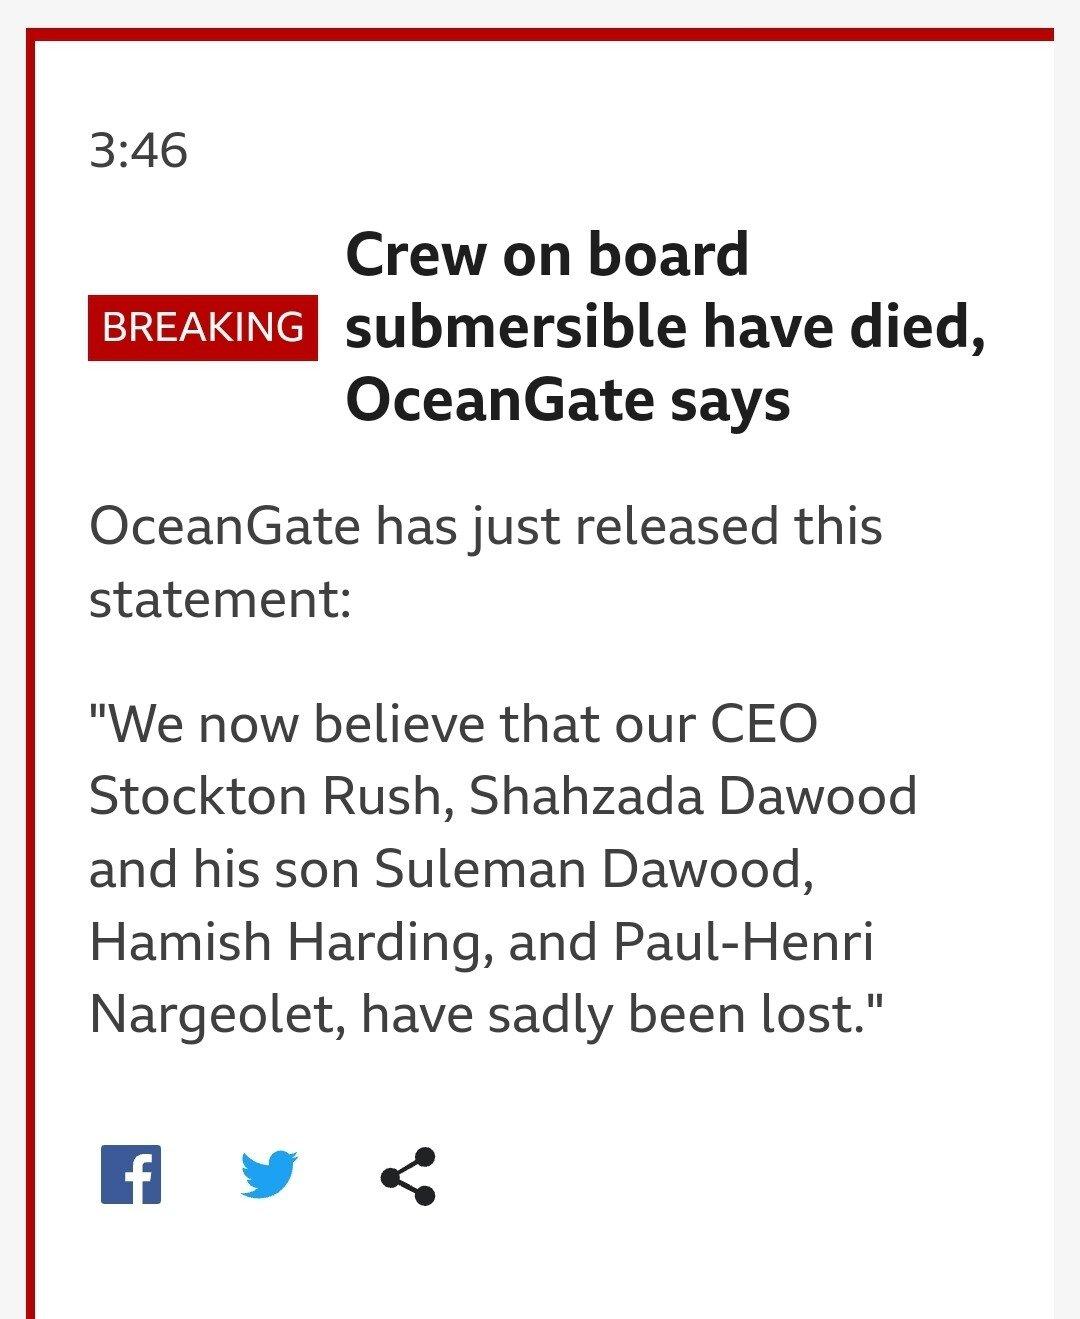 BBC속보)잠수정 탑승자 5명 사망 공식발표